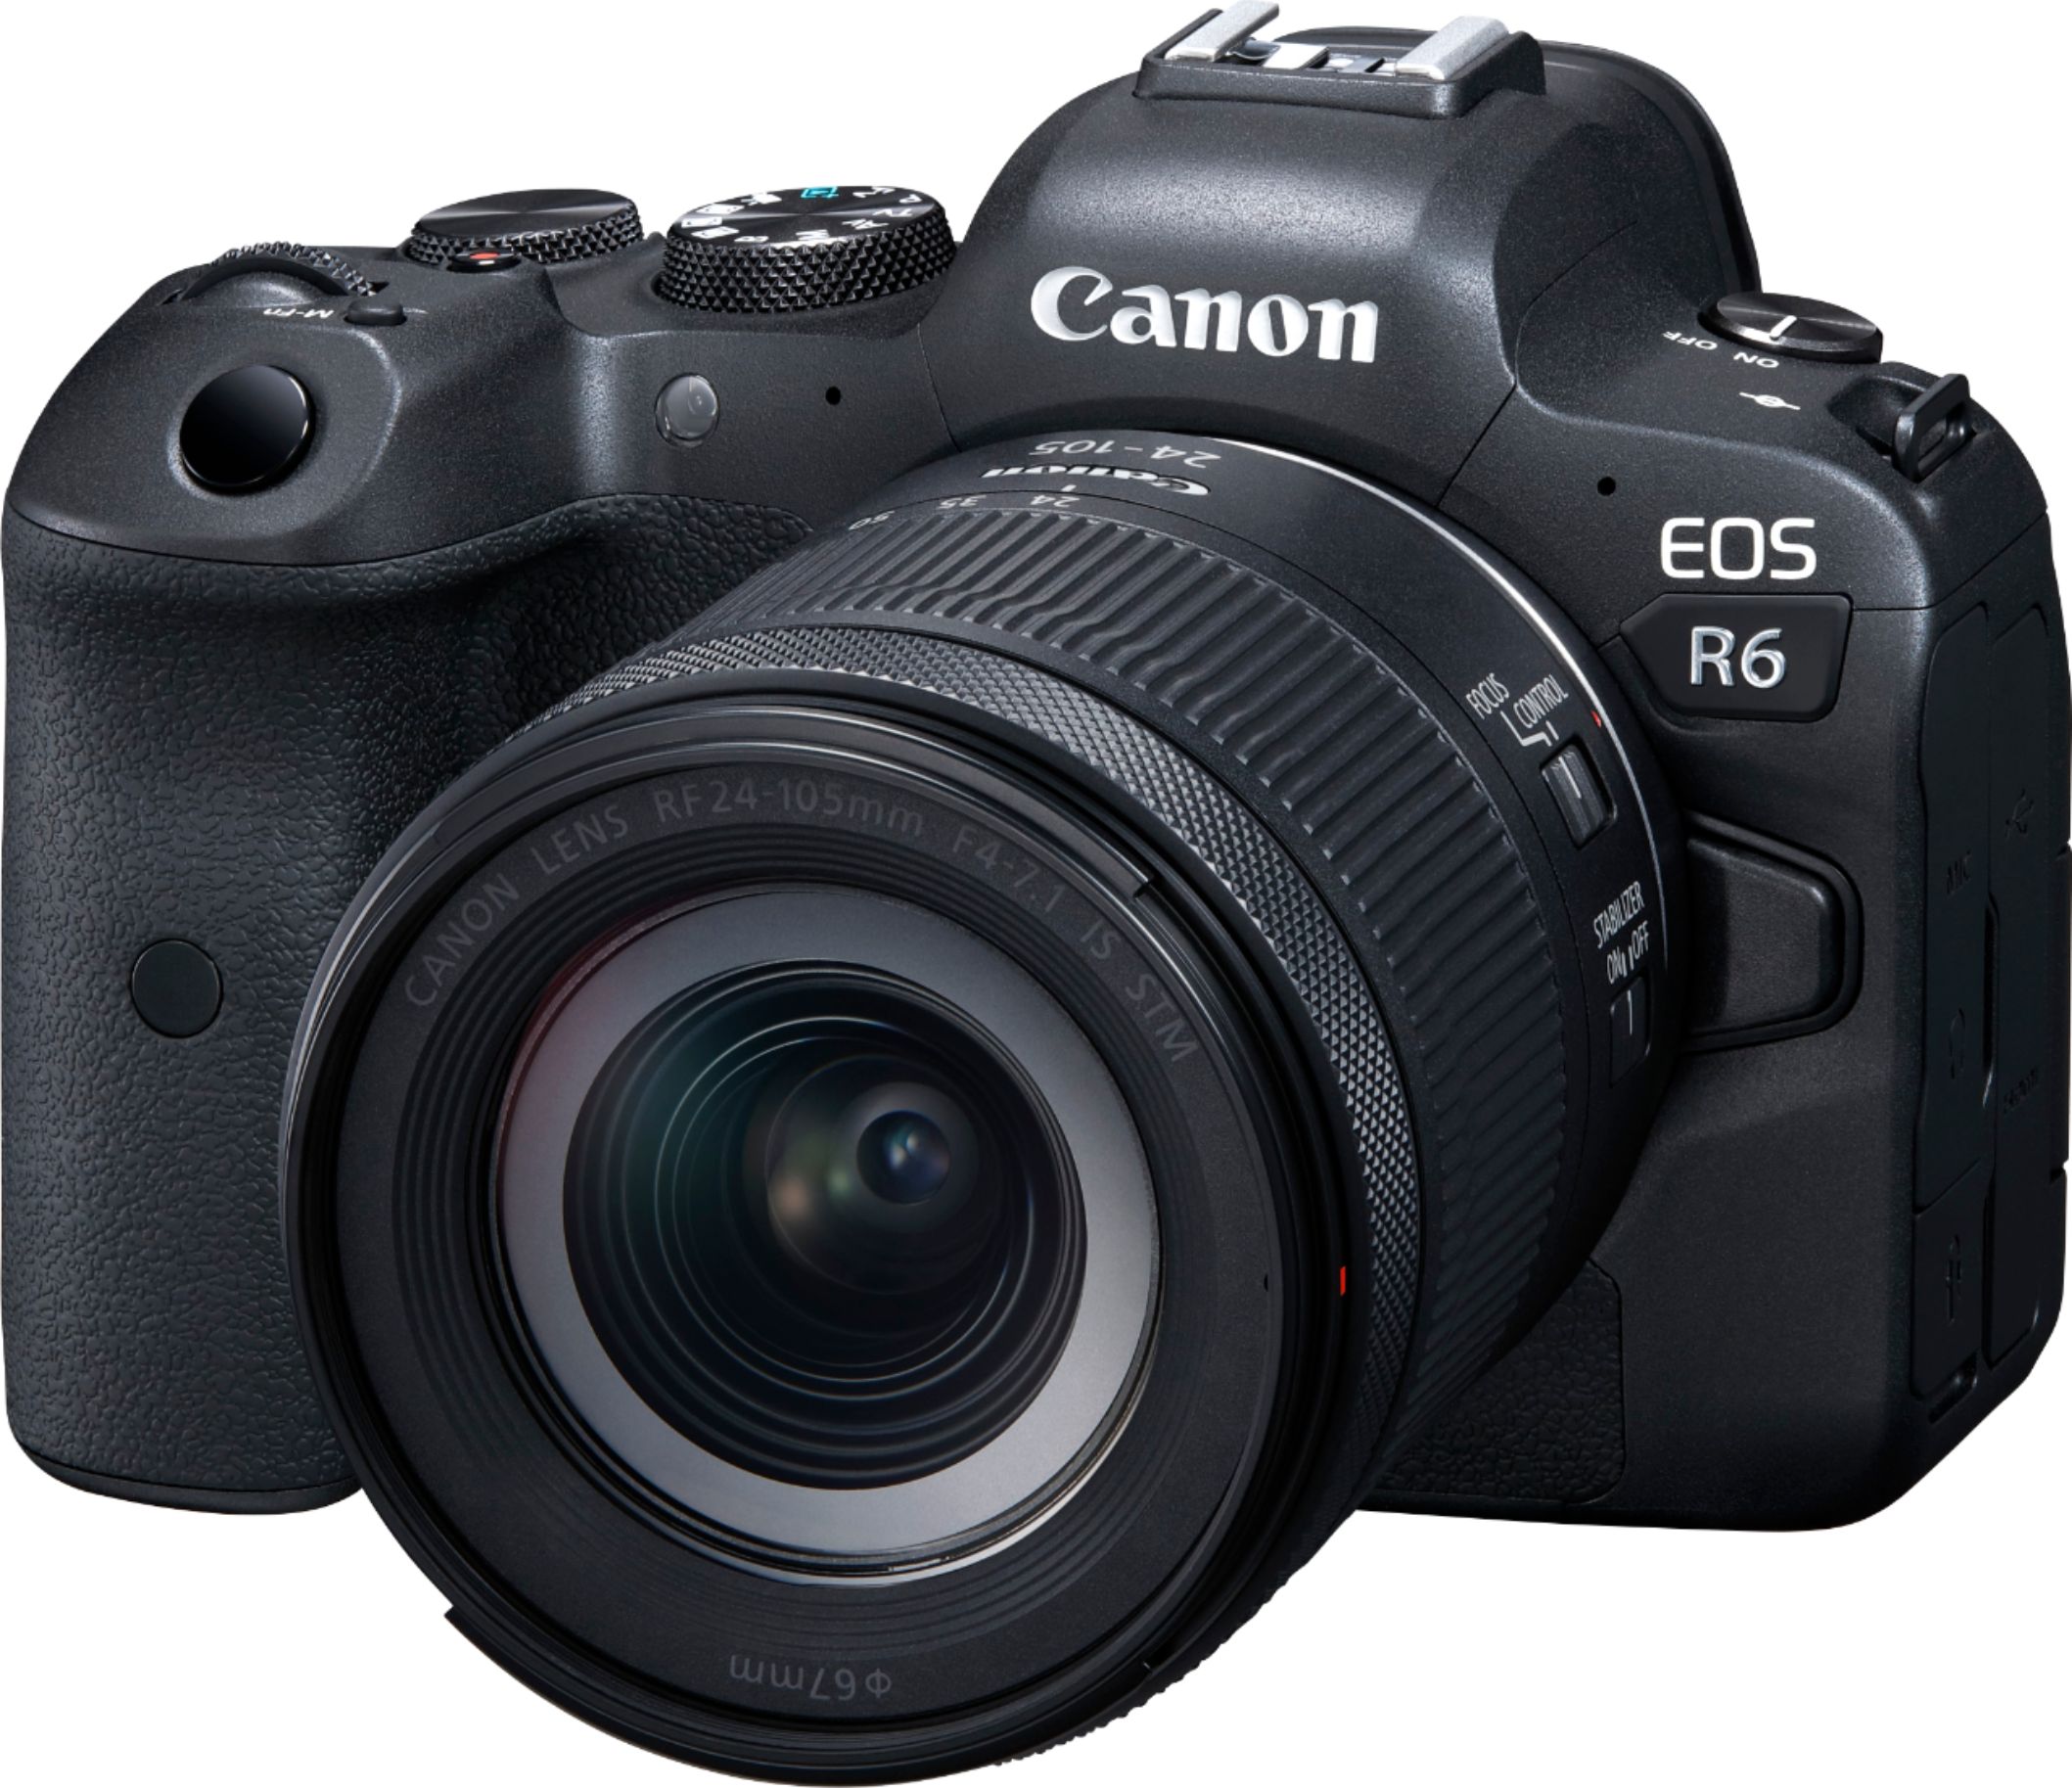 Bezienswaardigheden bekijken Mart kaart Canon EOS R6 Mirrorless Camera with RF 24-105mm f/4-7.1 IS STM Lens Black  4082C022 - Best Buy